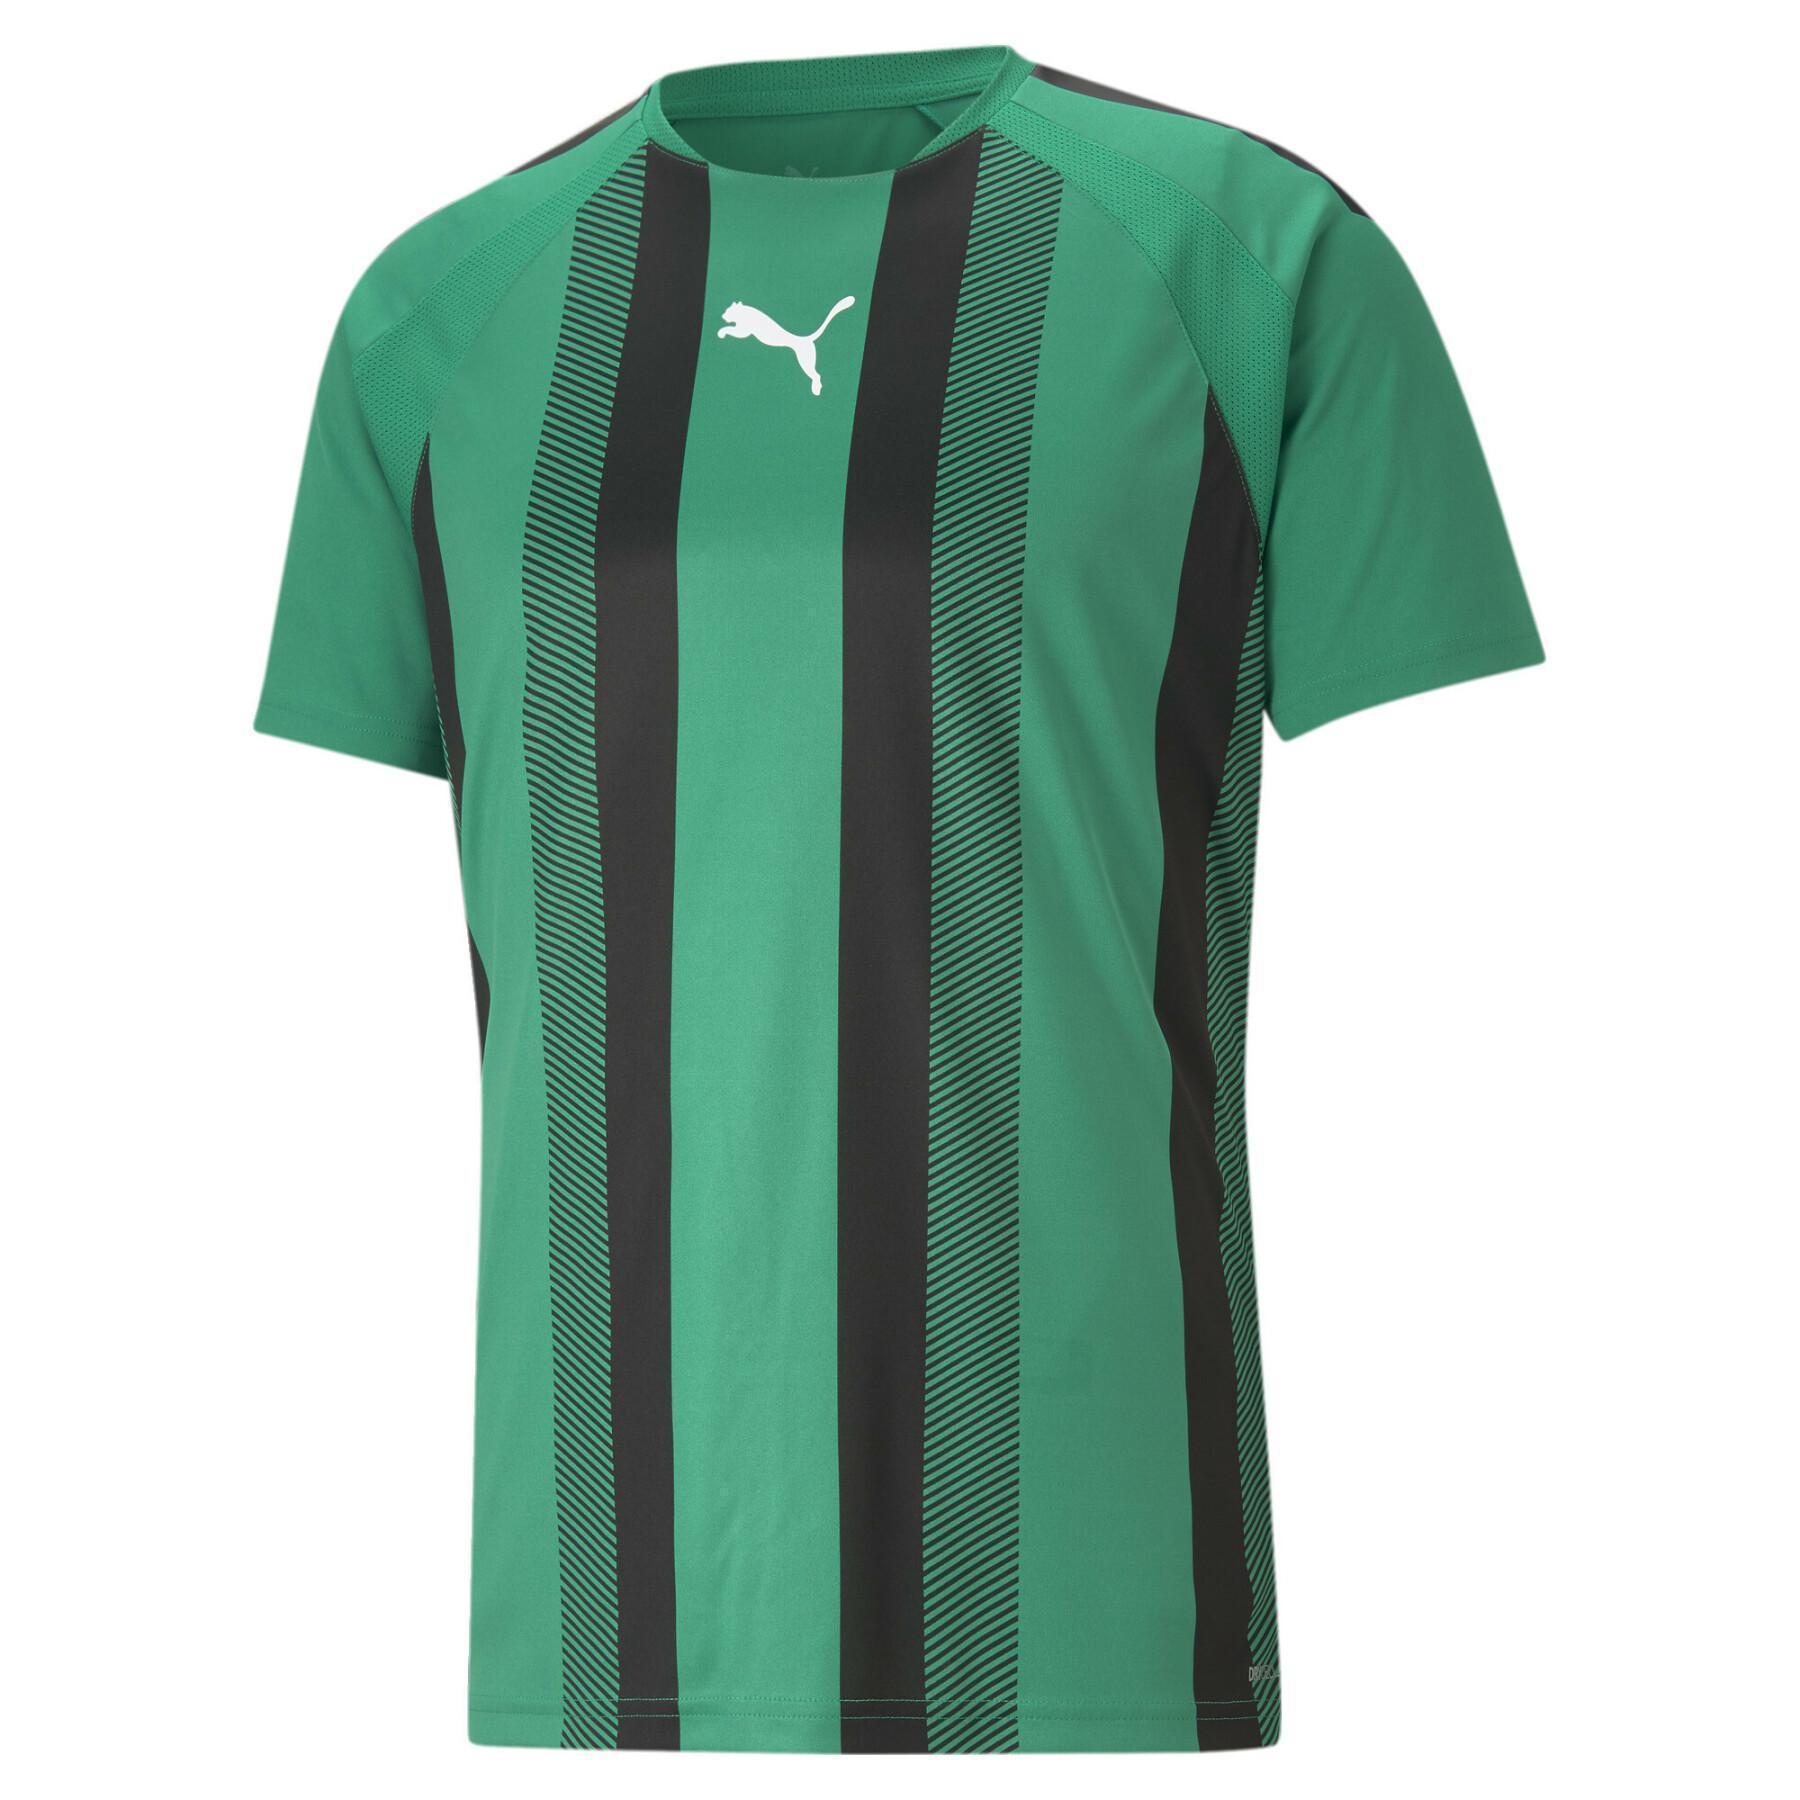 Koszulka Puma Team Liga Striped